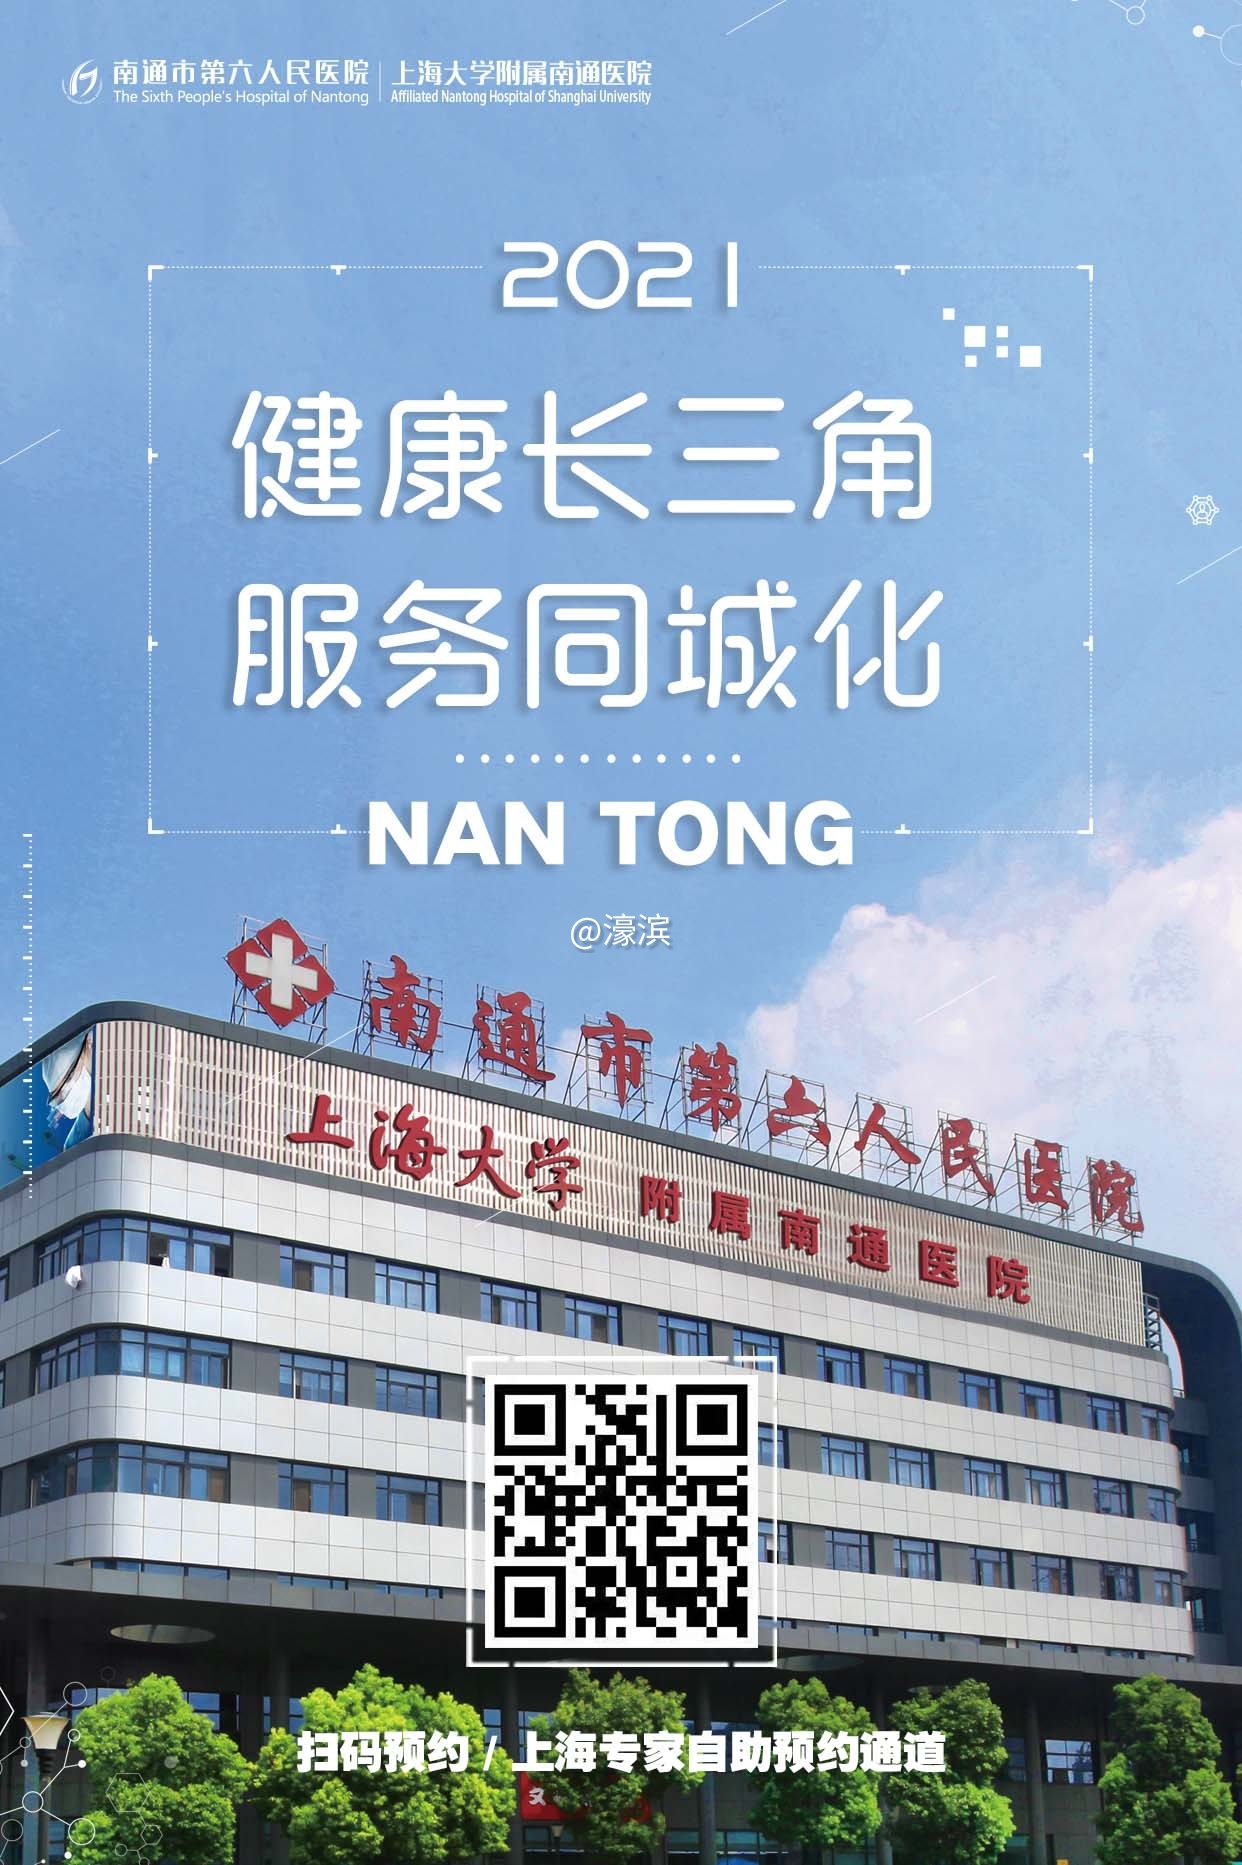 2021-01-09 健康长三角 服务同城化 预约上海专家海报1.jpg